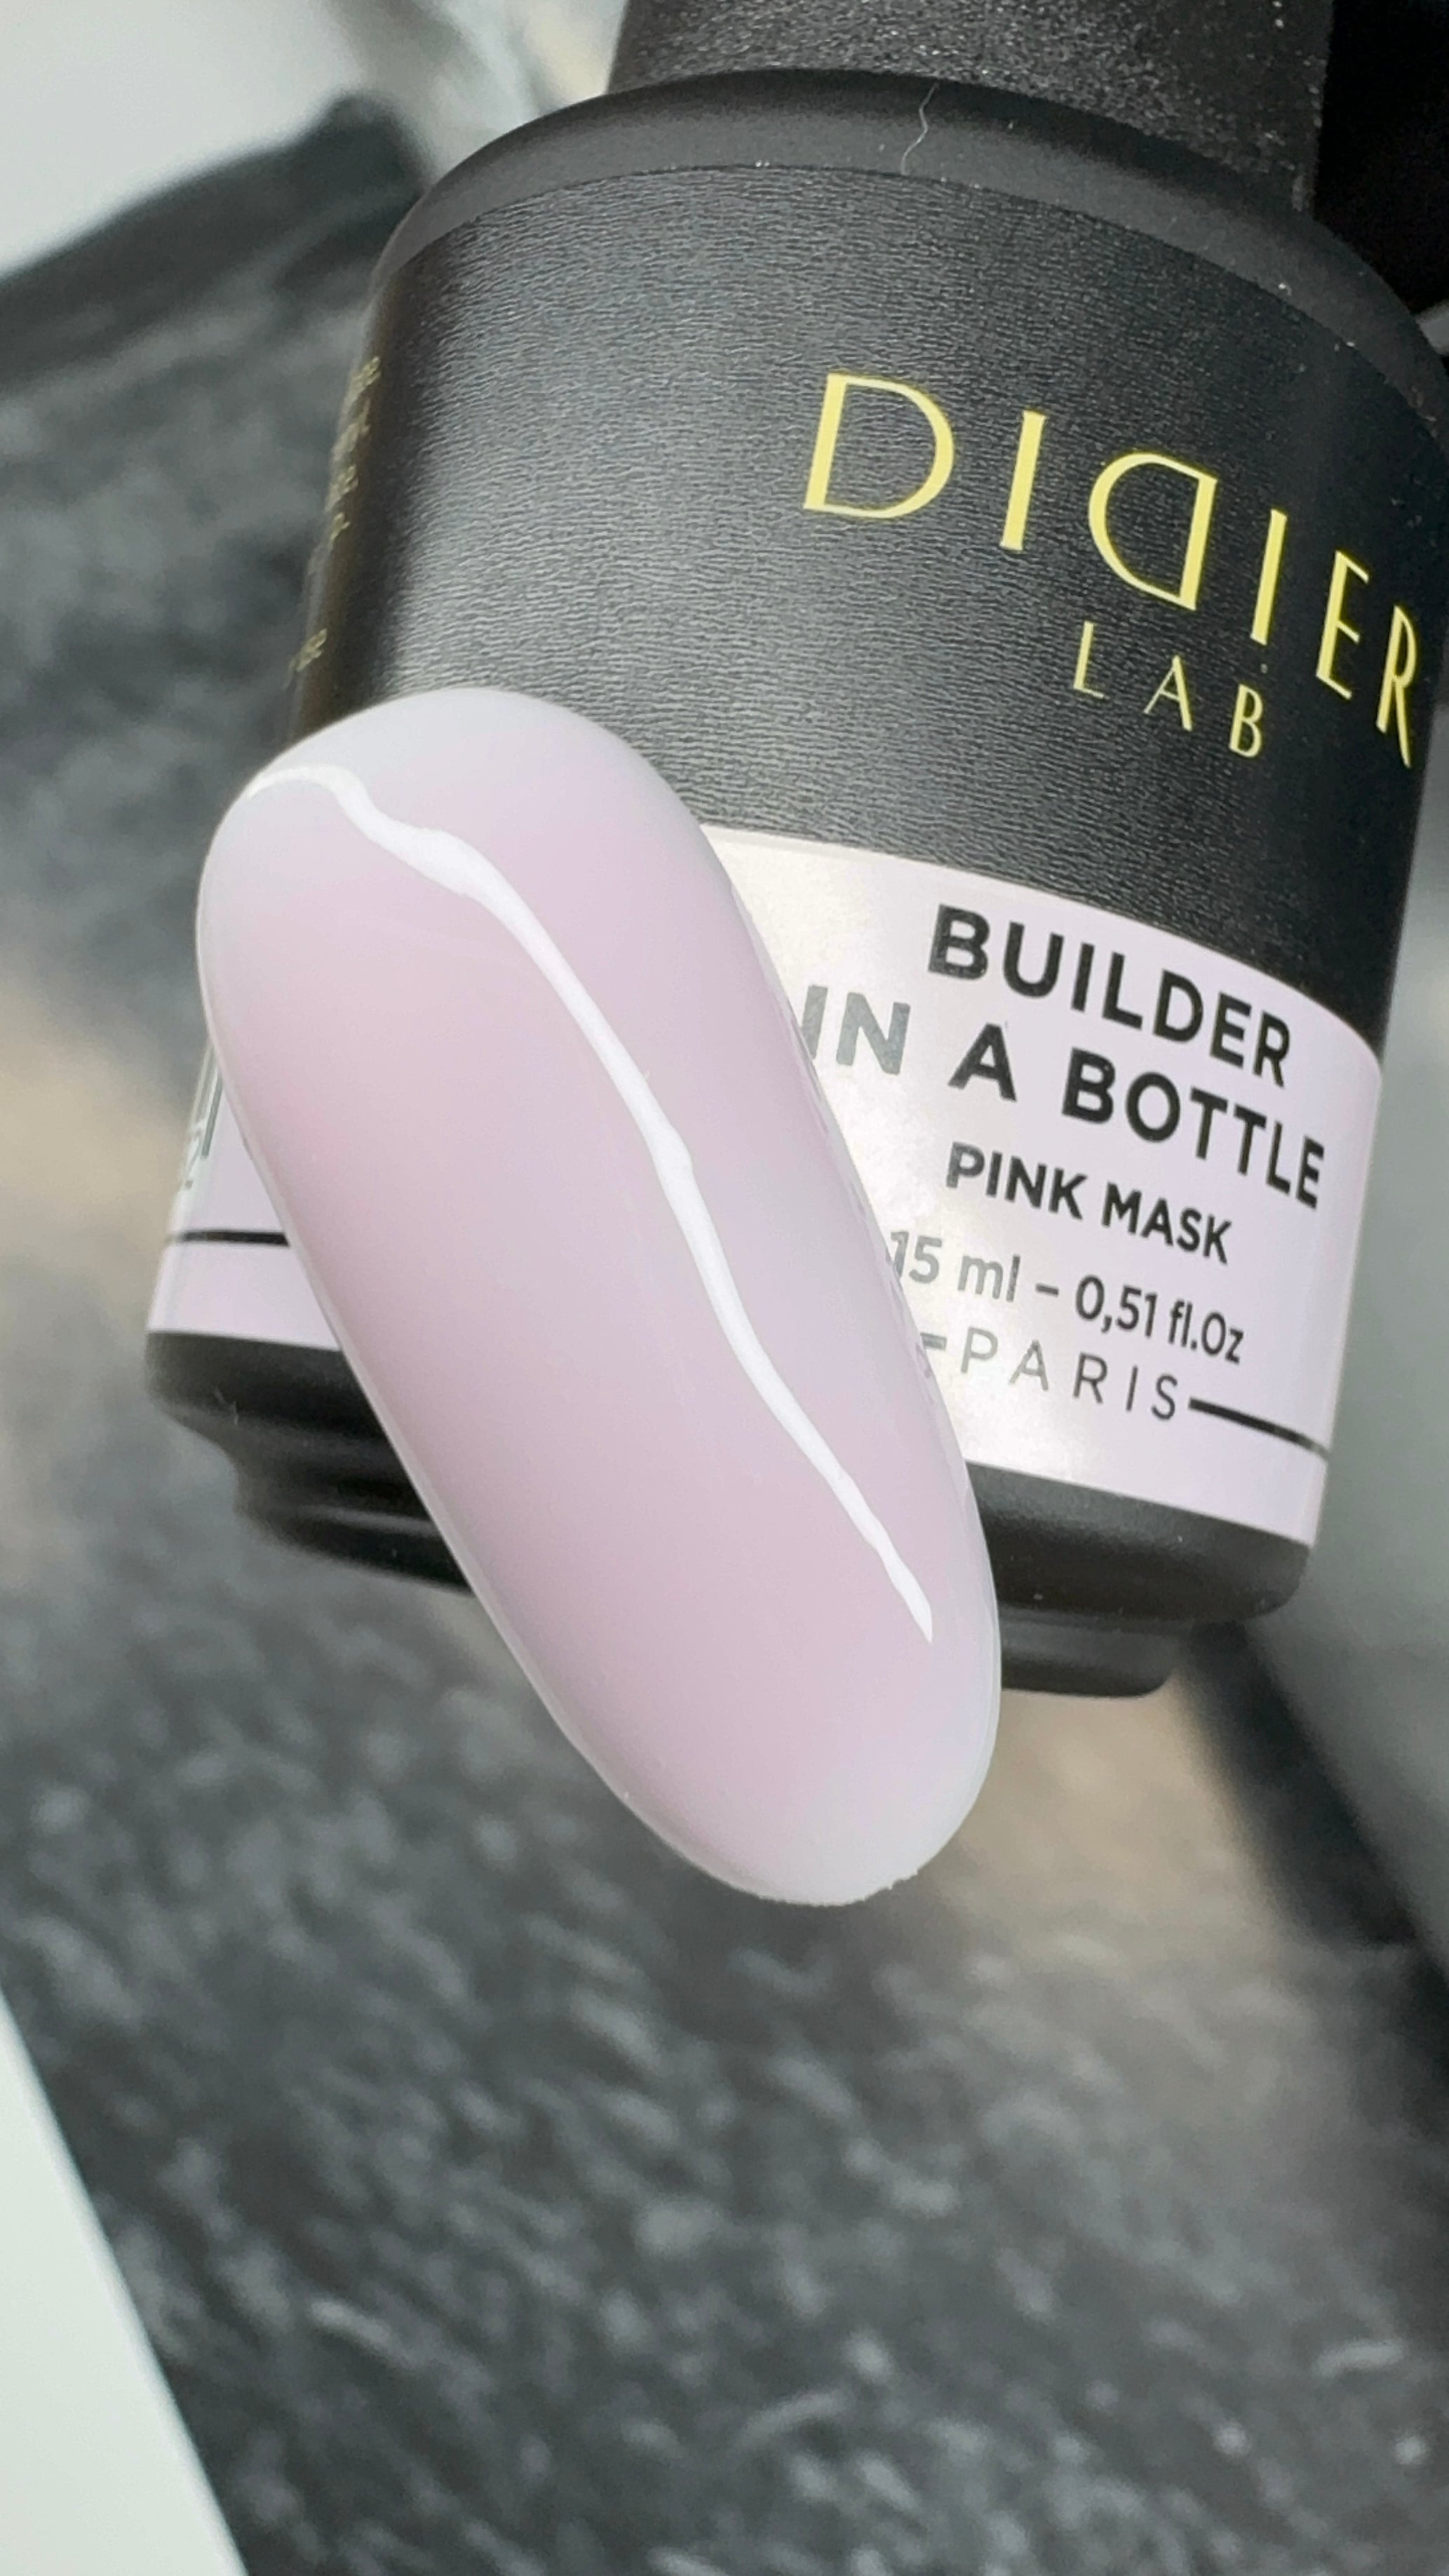 Builder Gel In a Bottle, 15ml